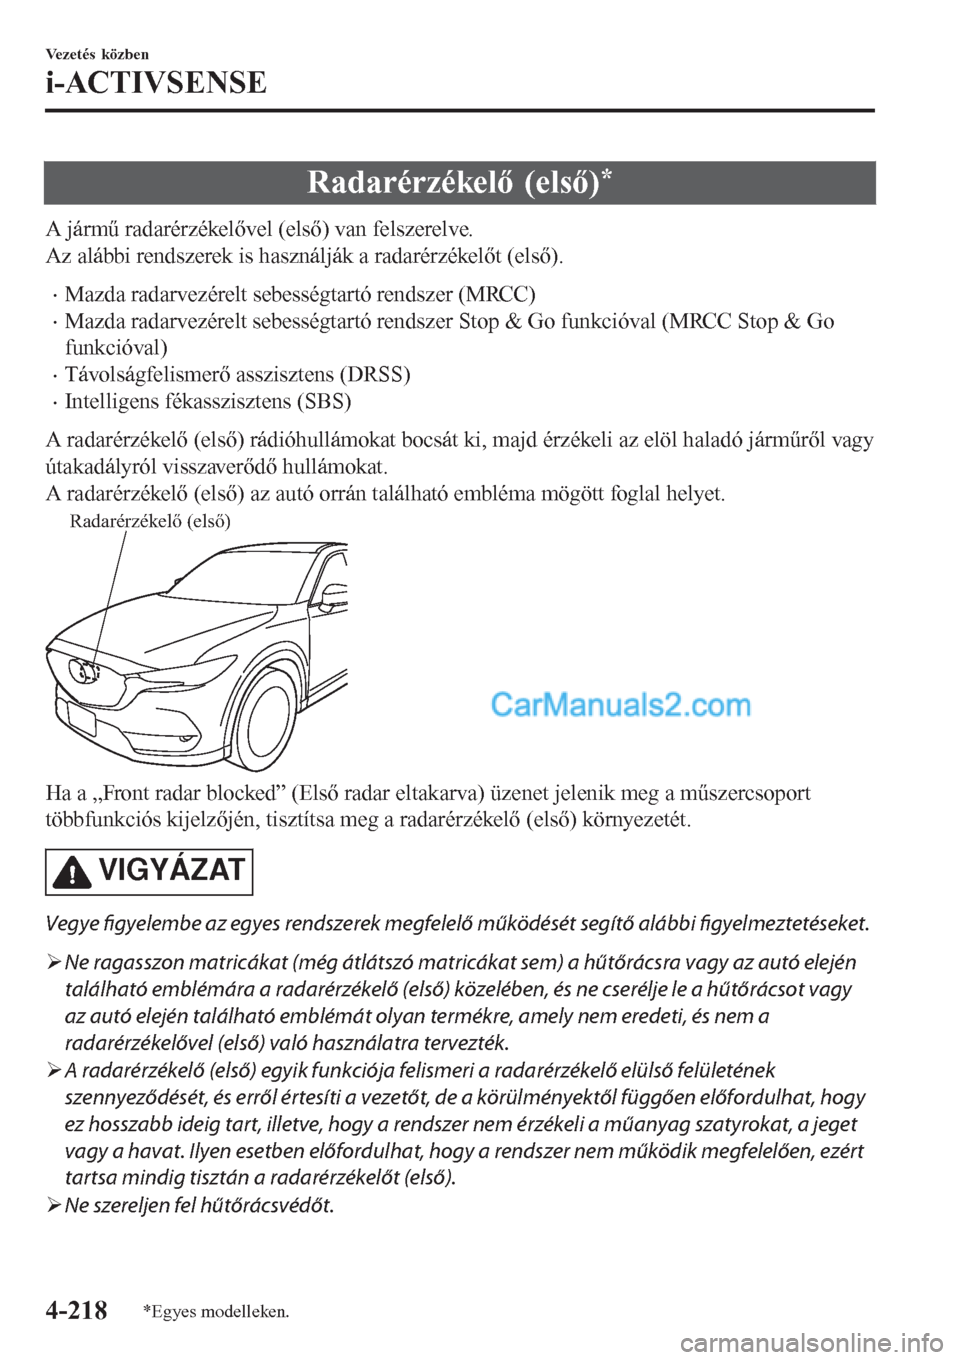 MAZDA MODEL CX-5 2017  Kezelési útmutató (in Hungarian) Radarérzékelő (első)*
A jármű radarérzékelővel (első) van felszerelve.
Az alábbi rendszerek is használják a radarérzékelőt (első).
•Mazda radarvezérelt sebességtartó rendszer (MR